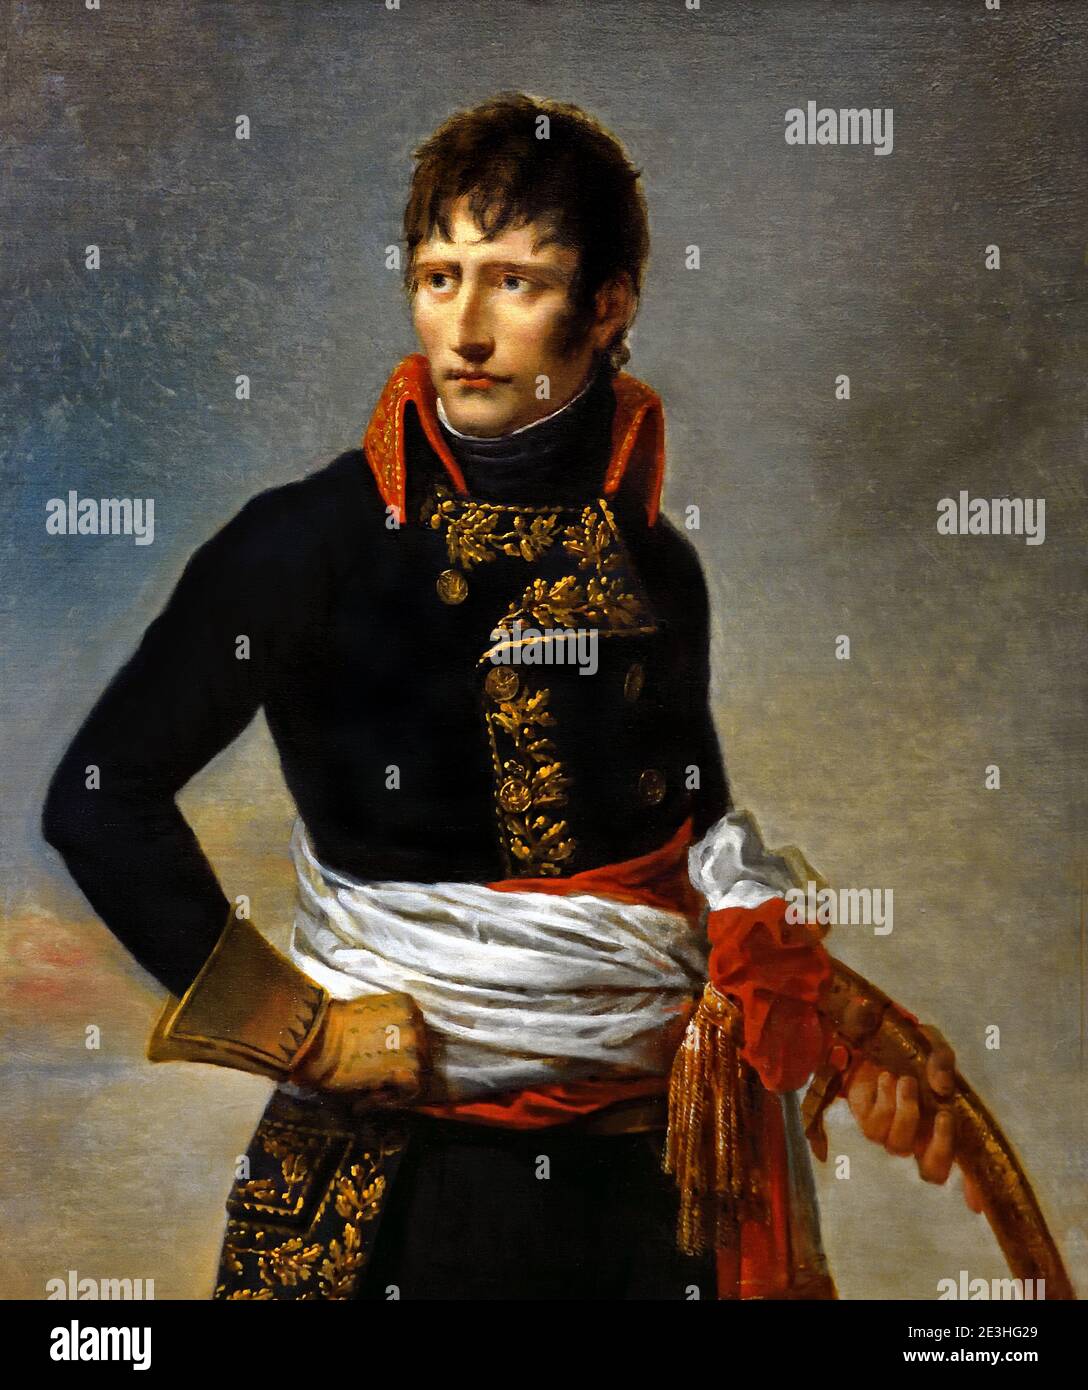 Retrato de Napoleón Bonaparte (1769-1821), como primer cónsul, de tres cuartos de longitud, sosteniendo un sable 1801 Andrea Appiani 1754-1817 Francia, francés, italiano, Italia, ( Emperador, francés, Francia, rey de Italia como Napoleón I,) Foto de stock